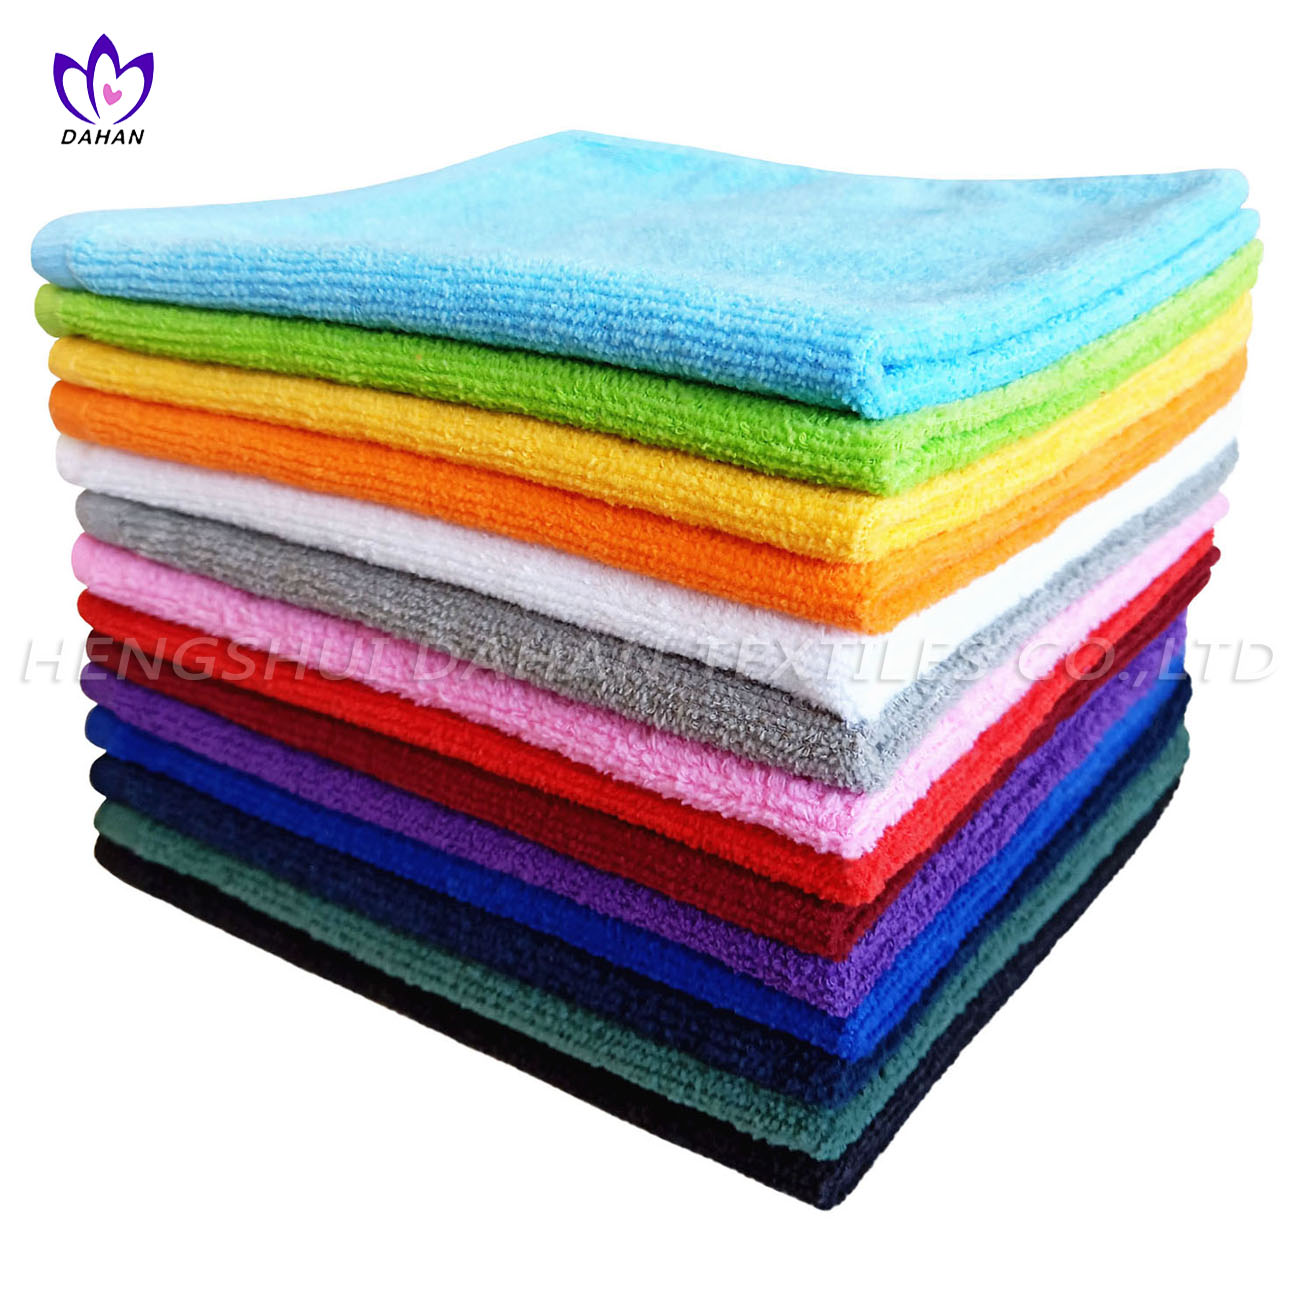 6080 100%cotton colorful kitchen towels.